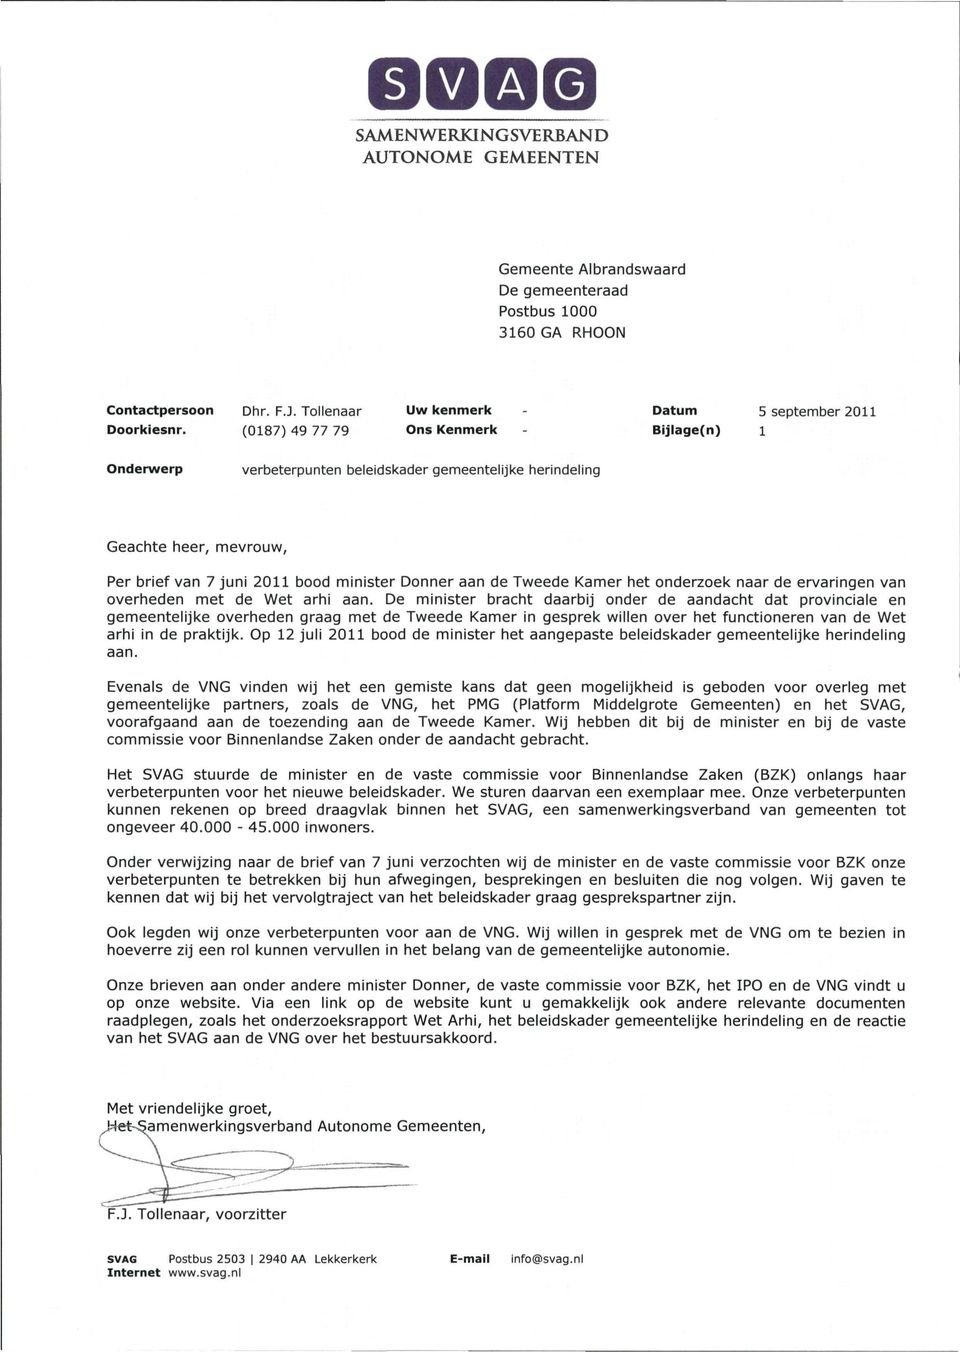 Per brief van 7 juni 2011 bood minister Donner aan de Tweede Kamer het onderzoek naar de ervaringen van overheden met de Wet arhi aan.